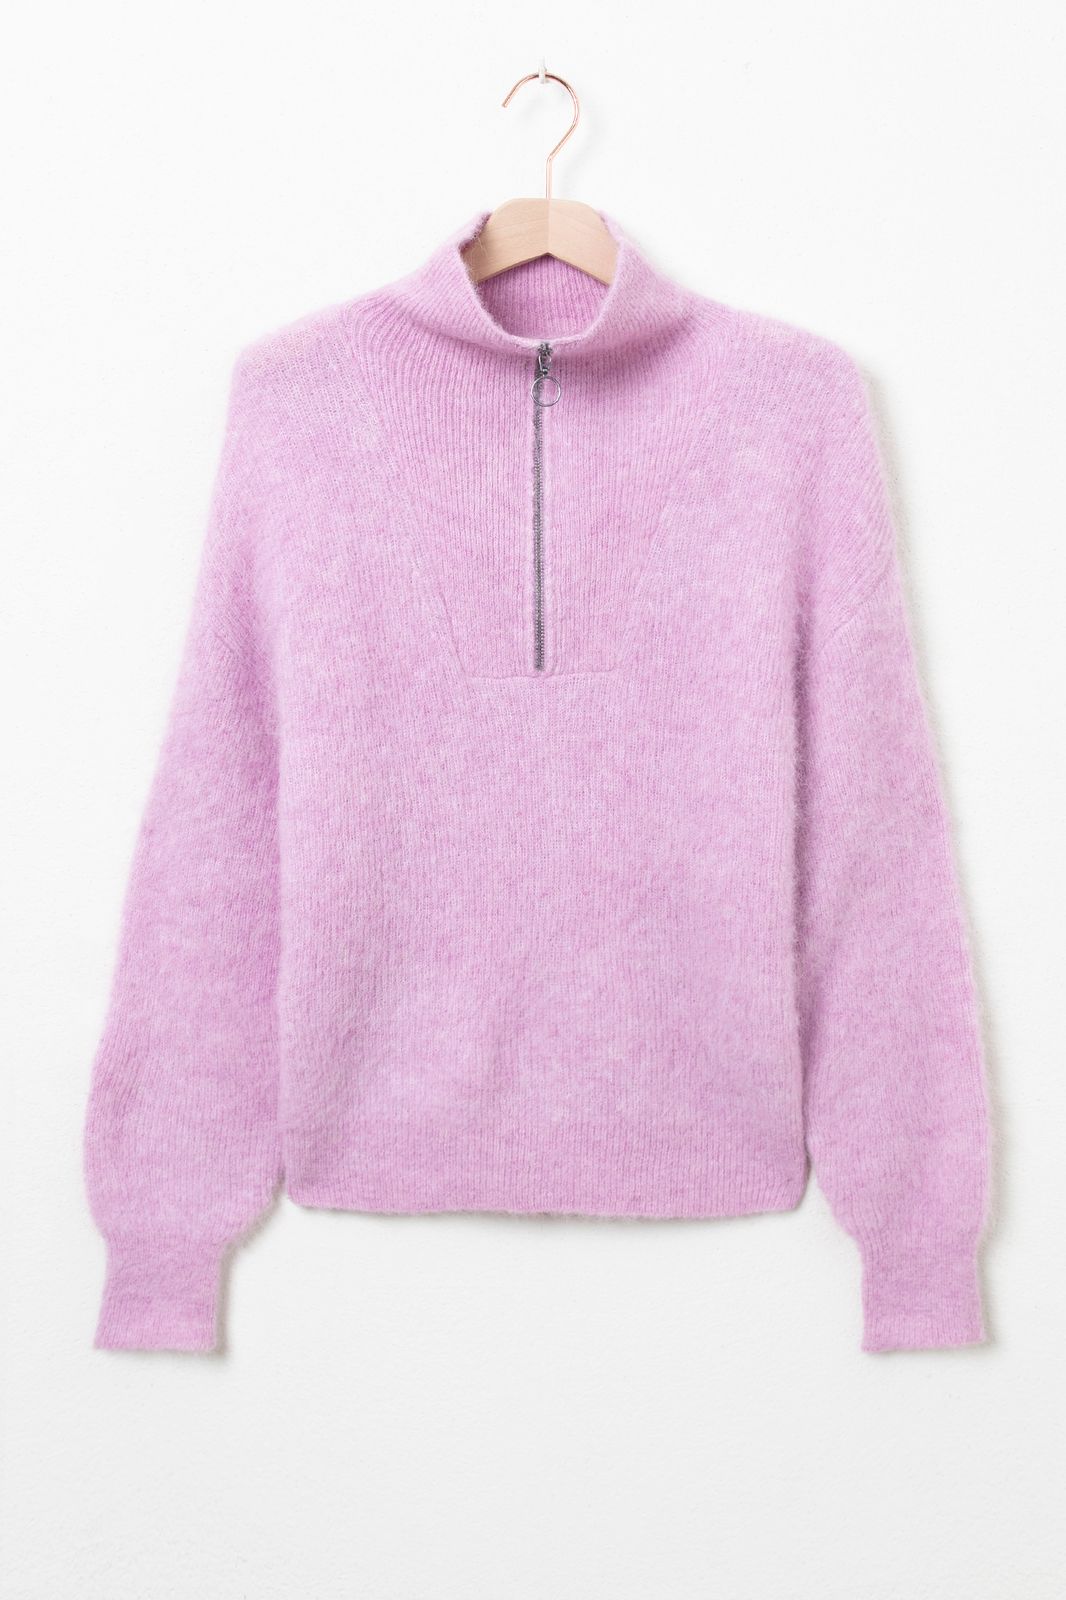 Pullover mit Reißverschluss - rosa